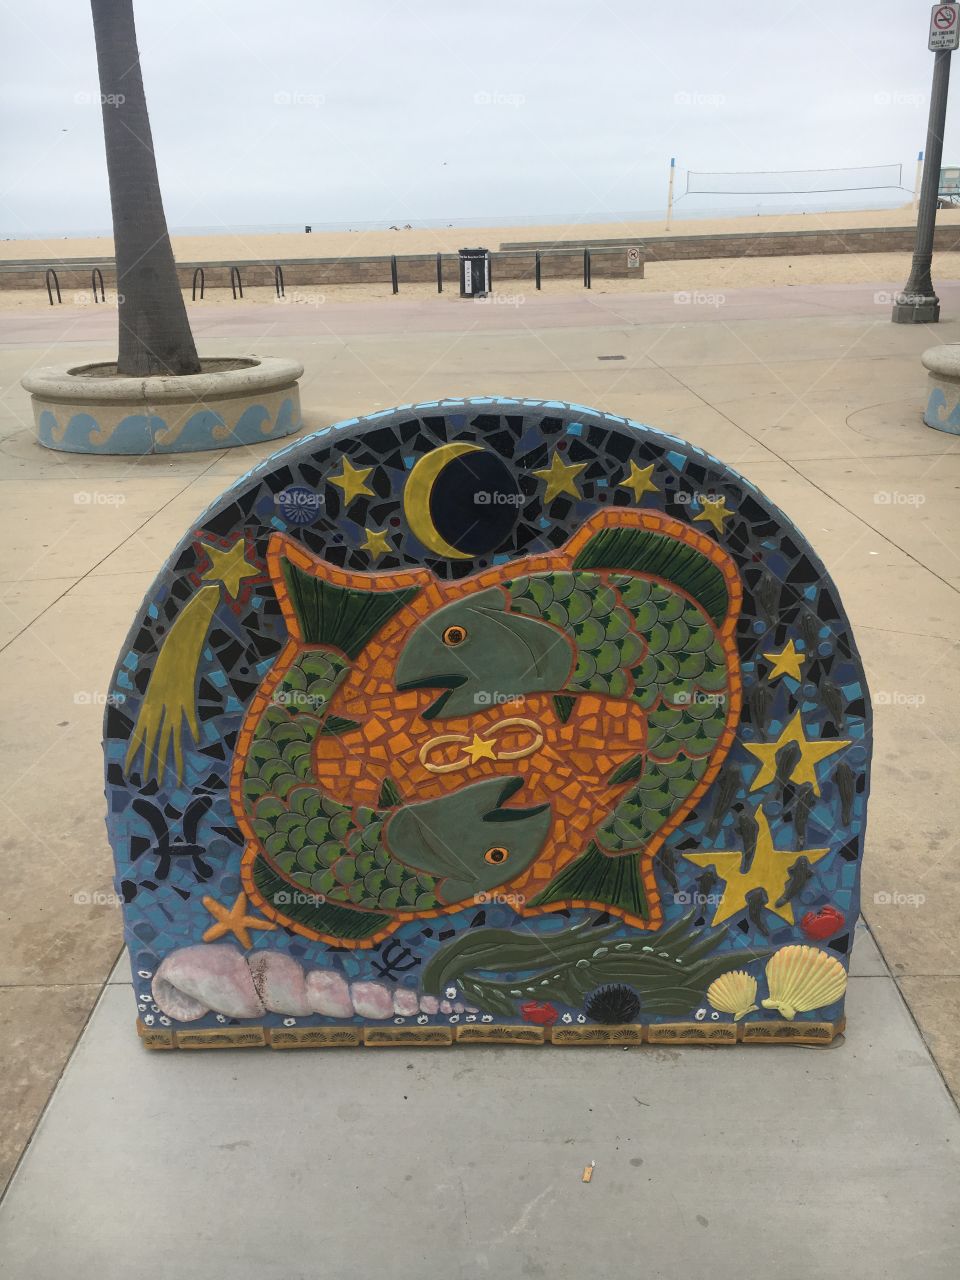 Artistic Mosaic Artwork at the Beach